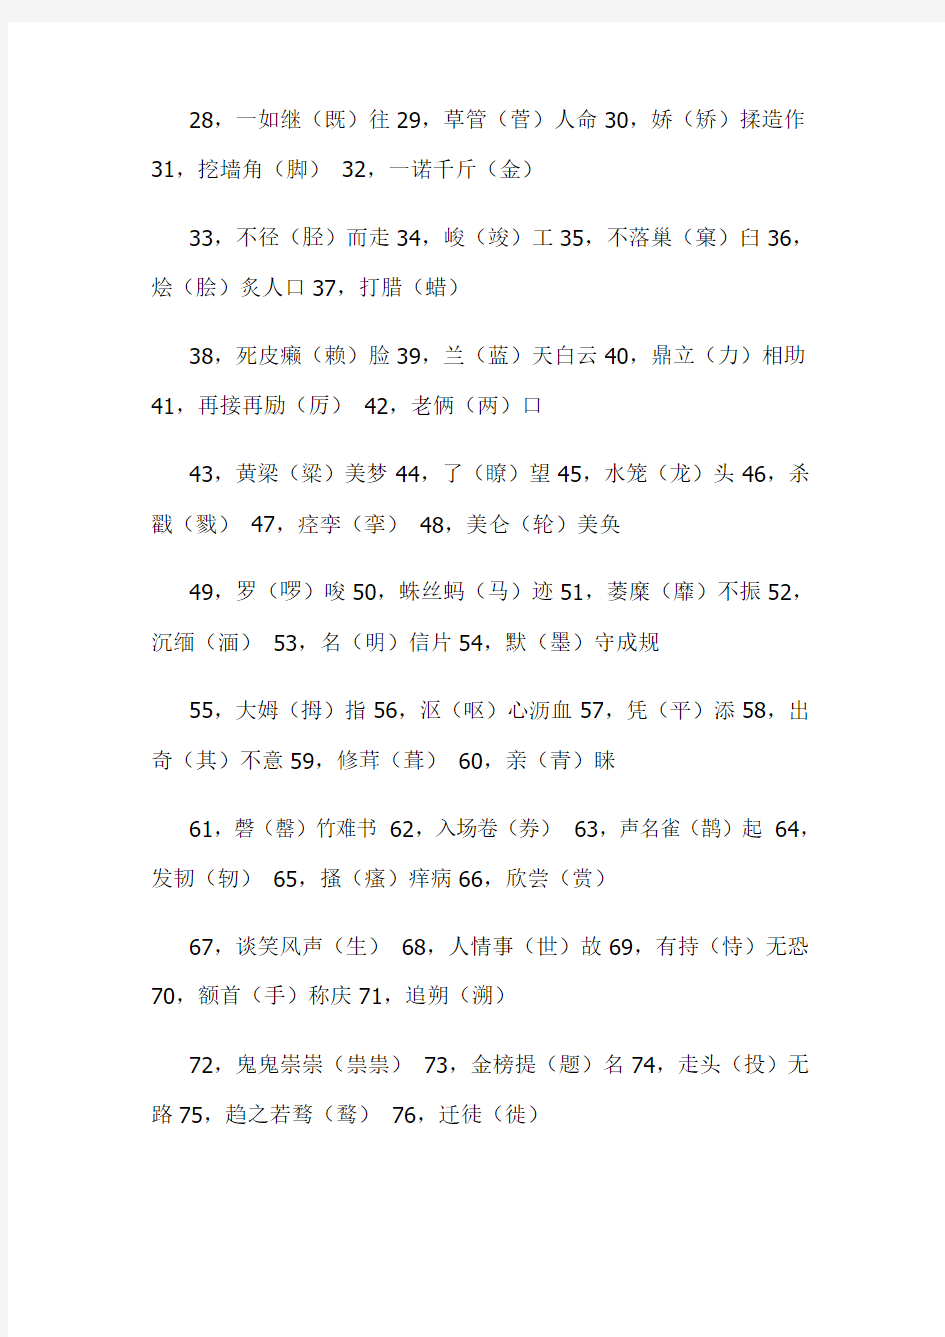 2013高考语文：盘点最容易写错的100个汉字